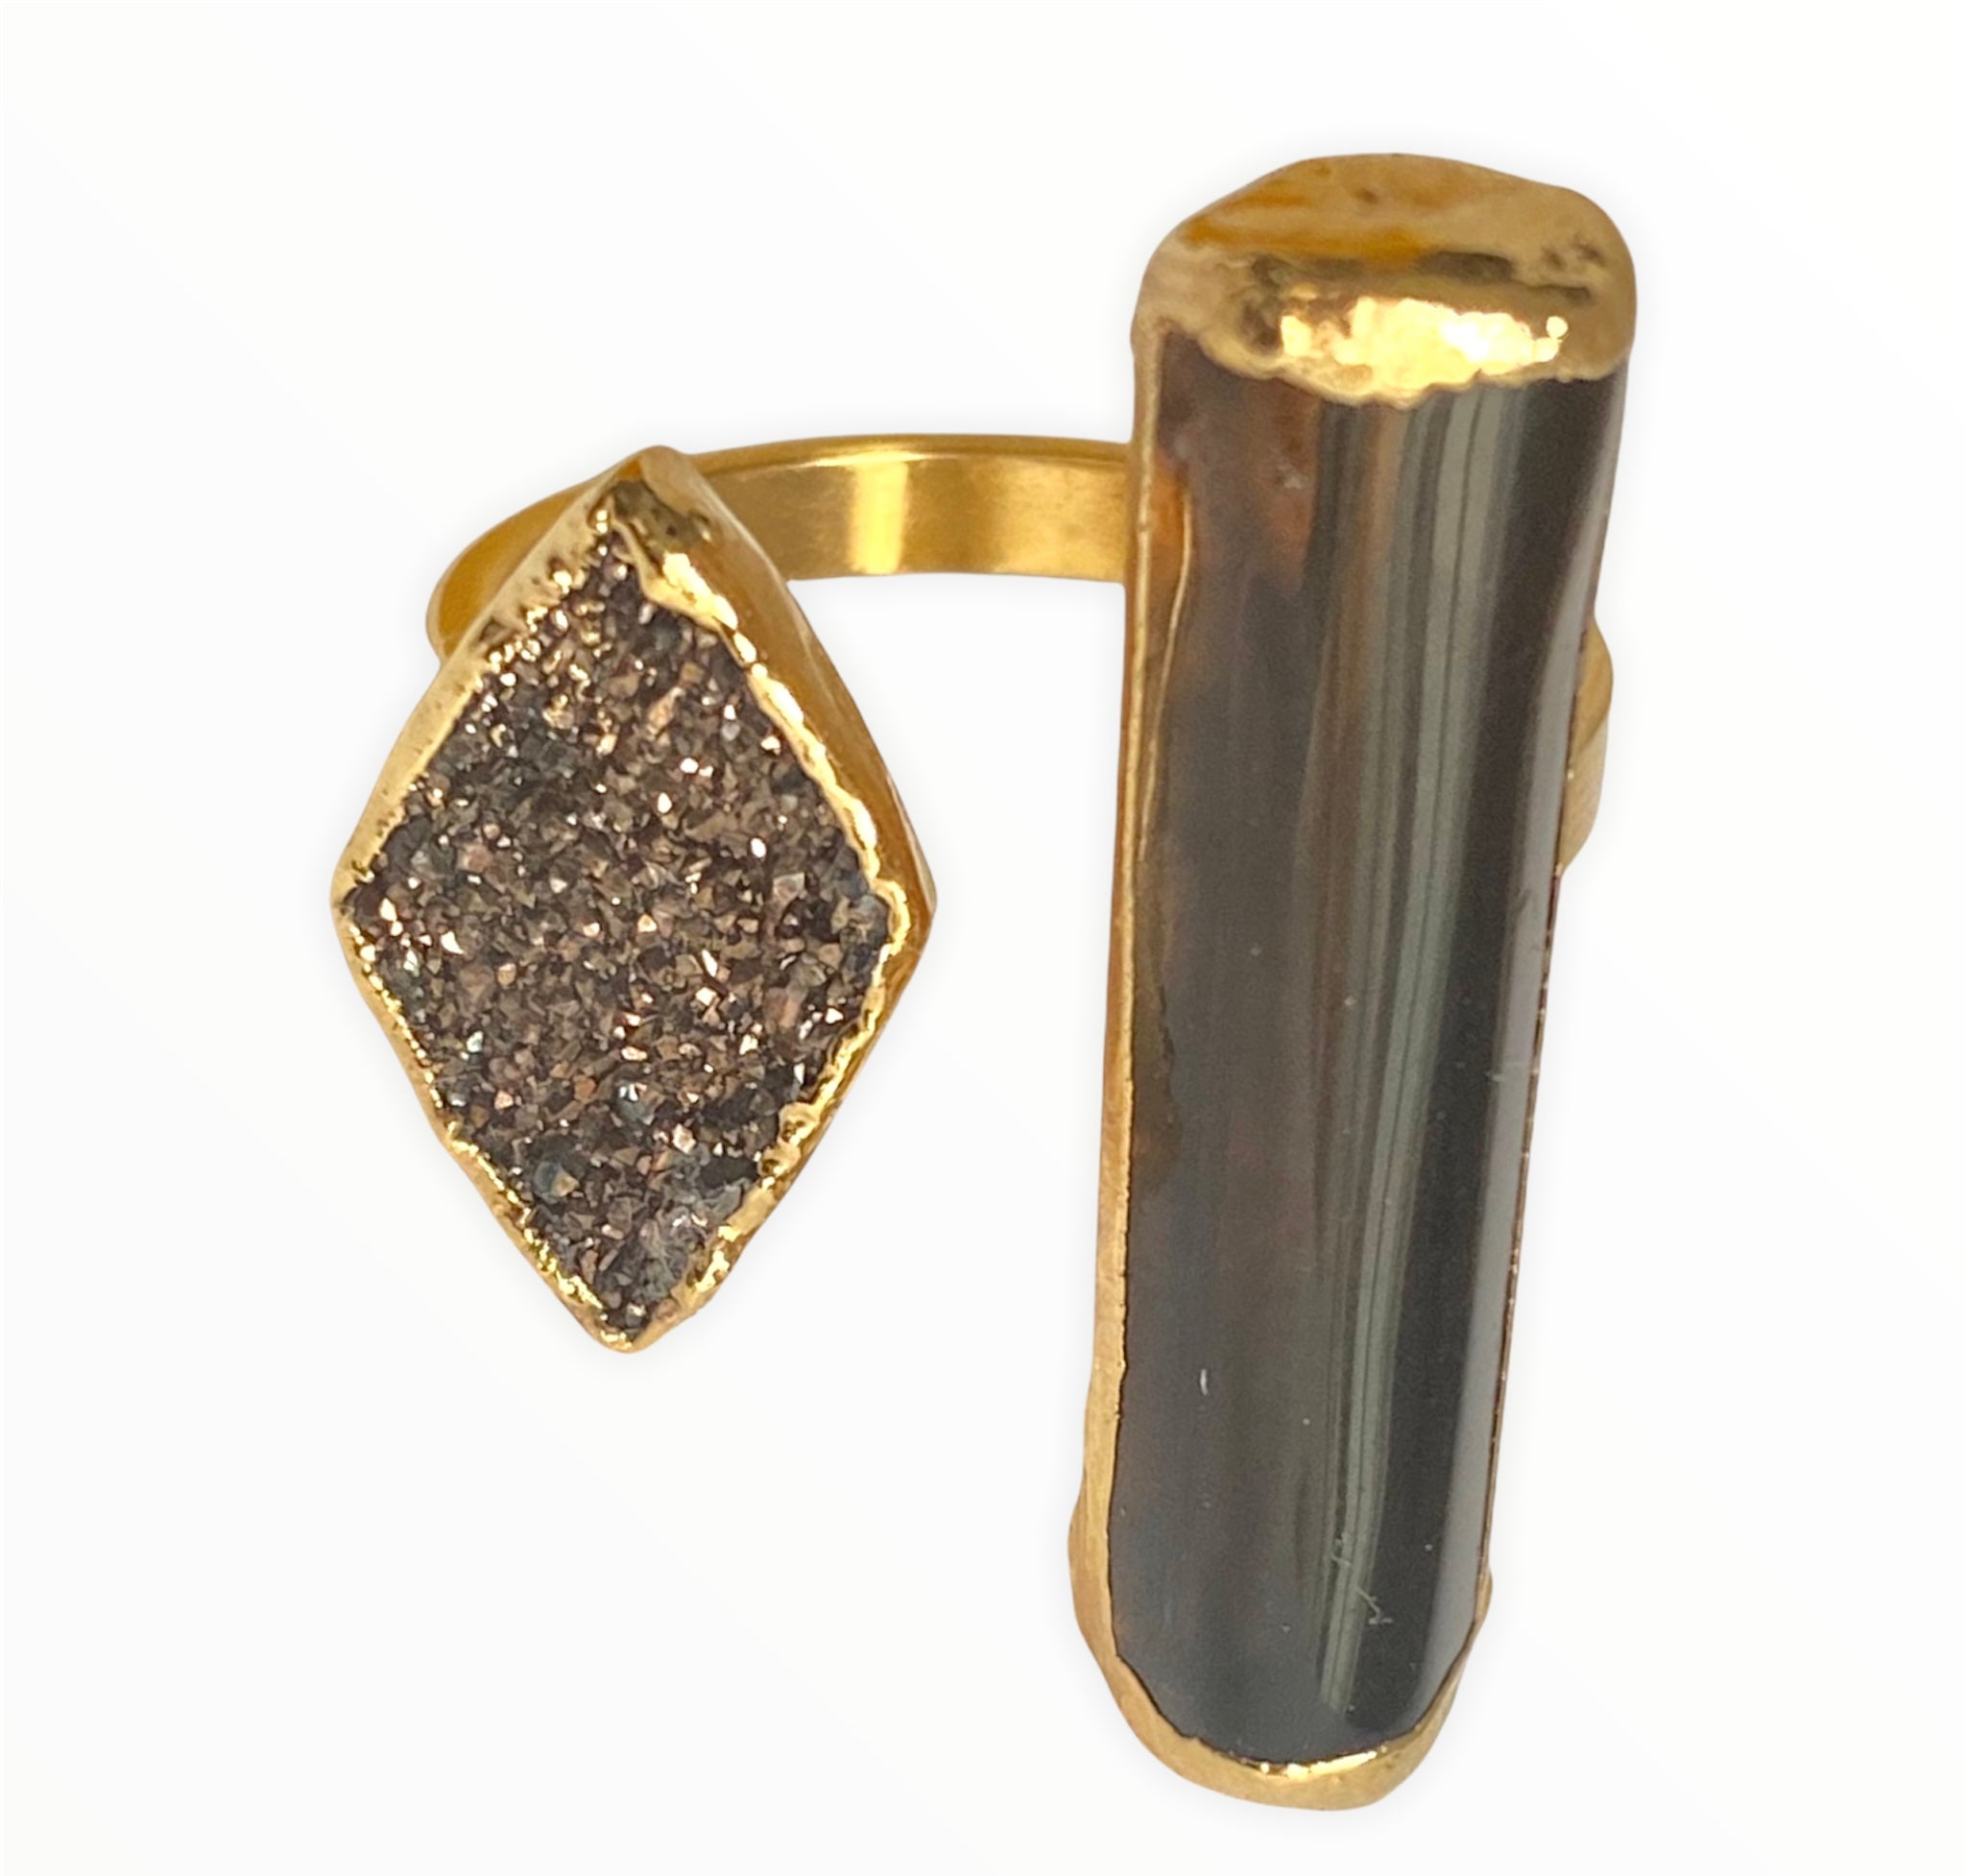 Smoky Quartz and copper druzy cuff ring (size 9)